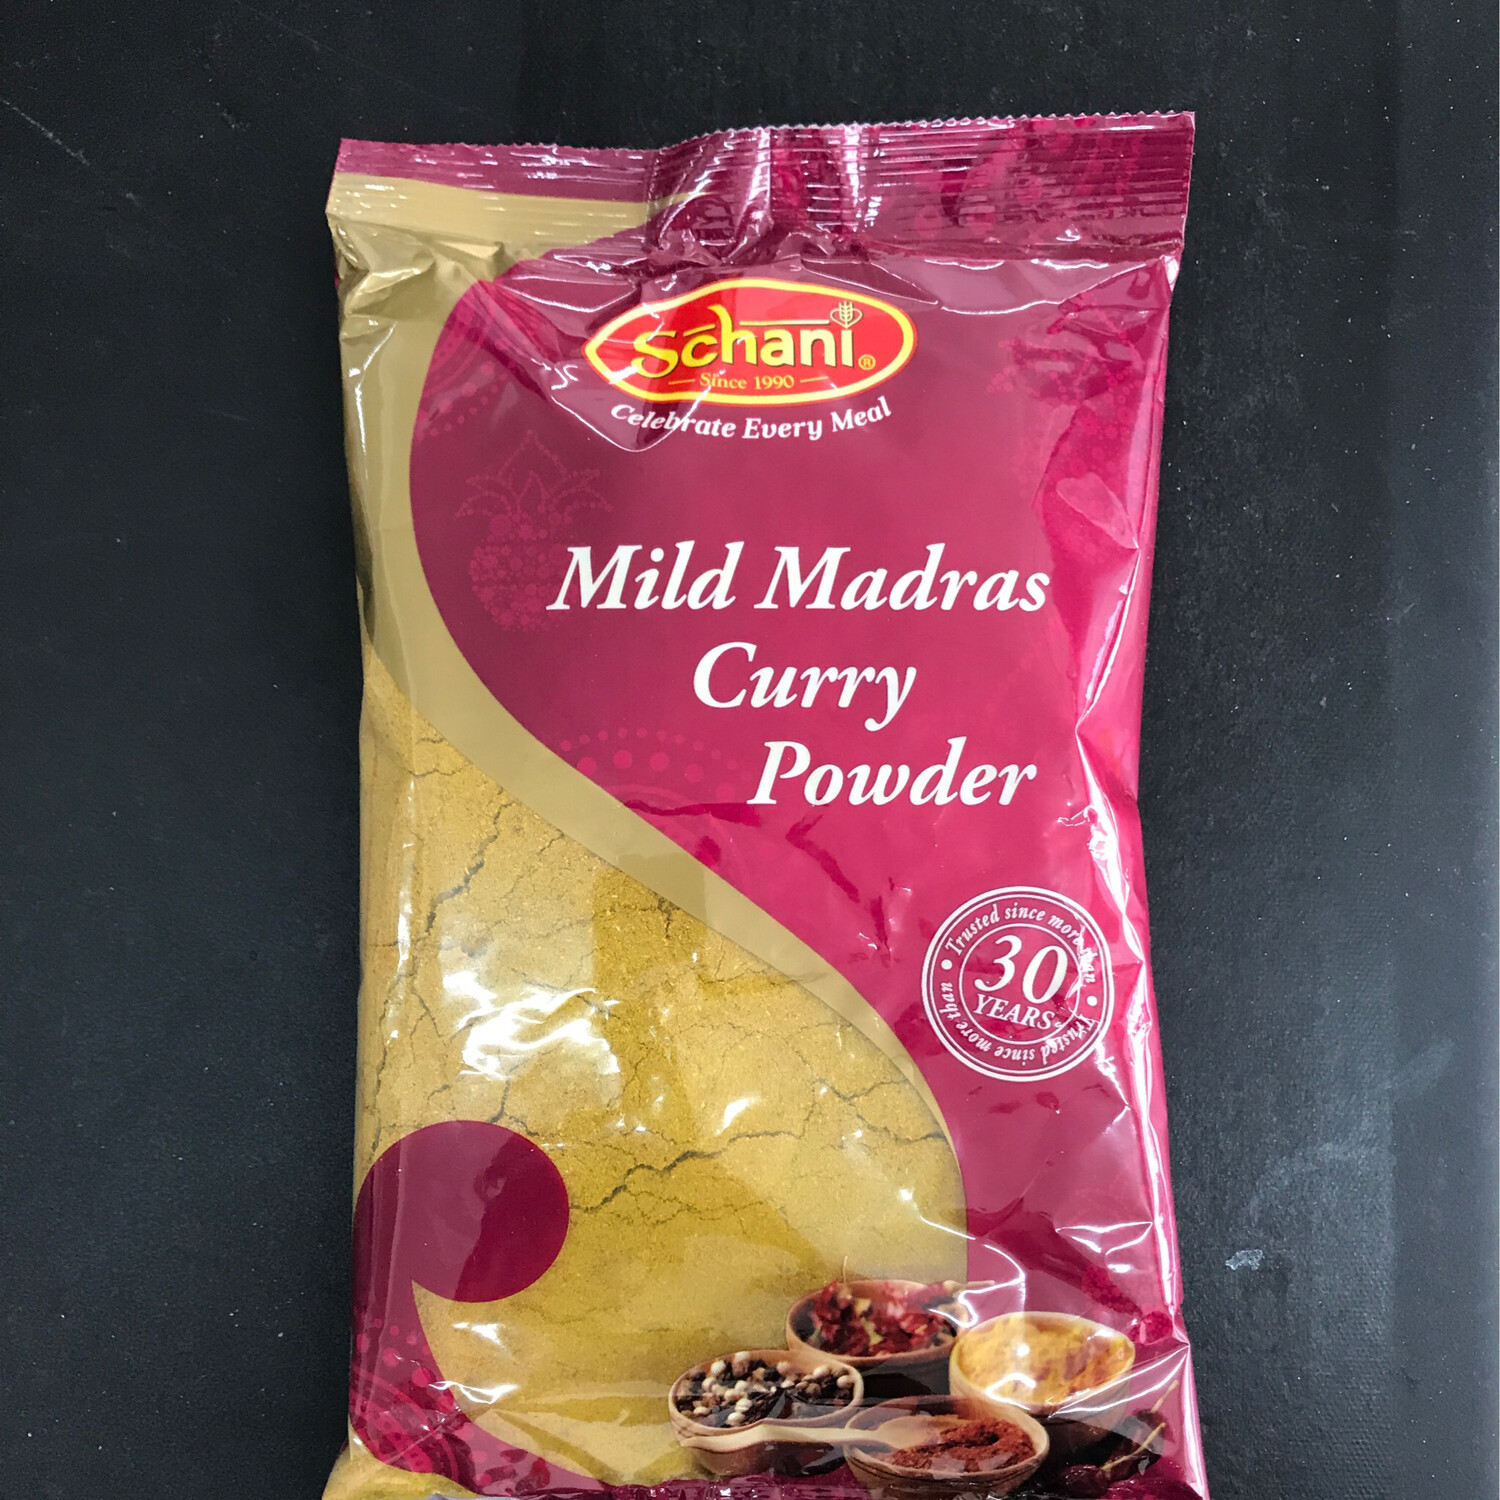 Schani Mild Madras Curry Powder 400g